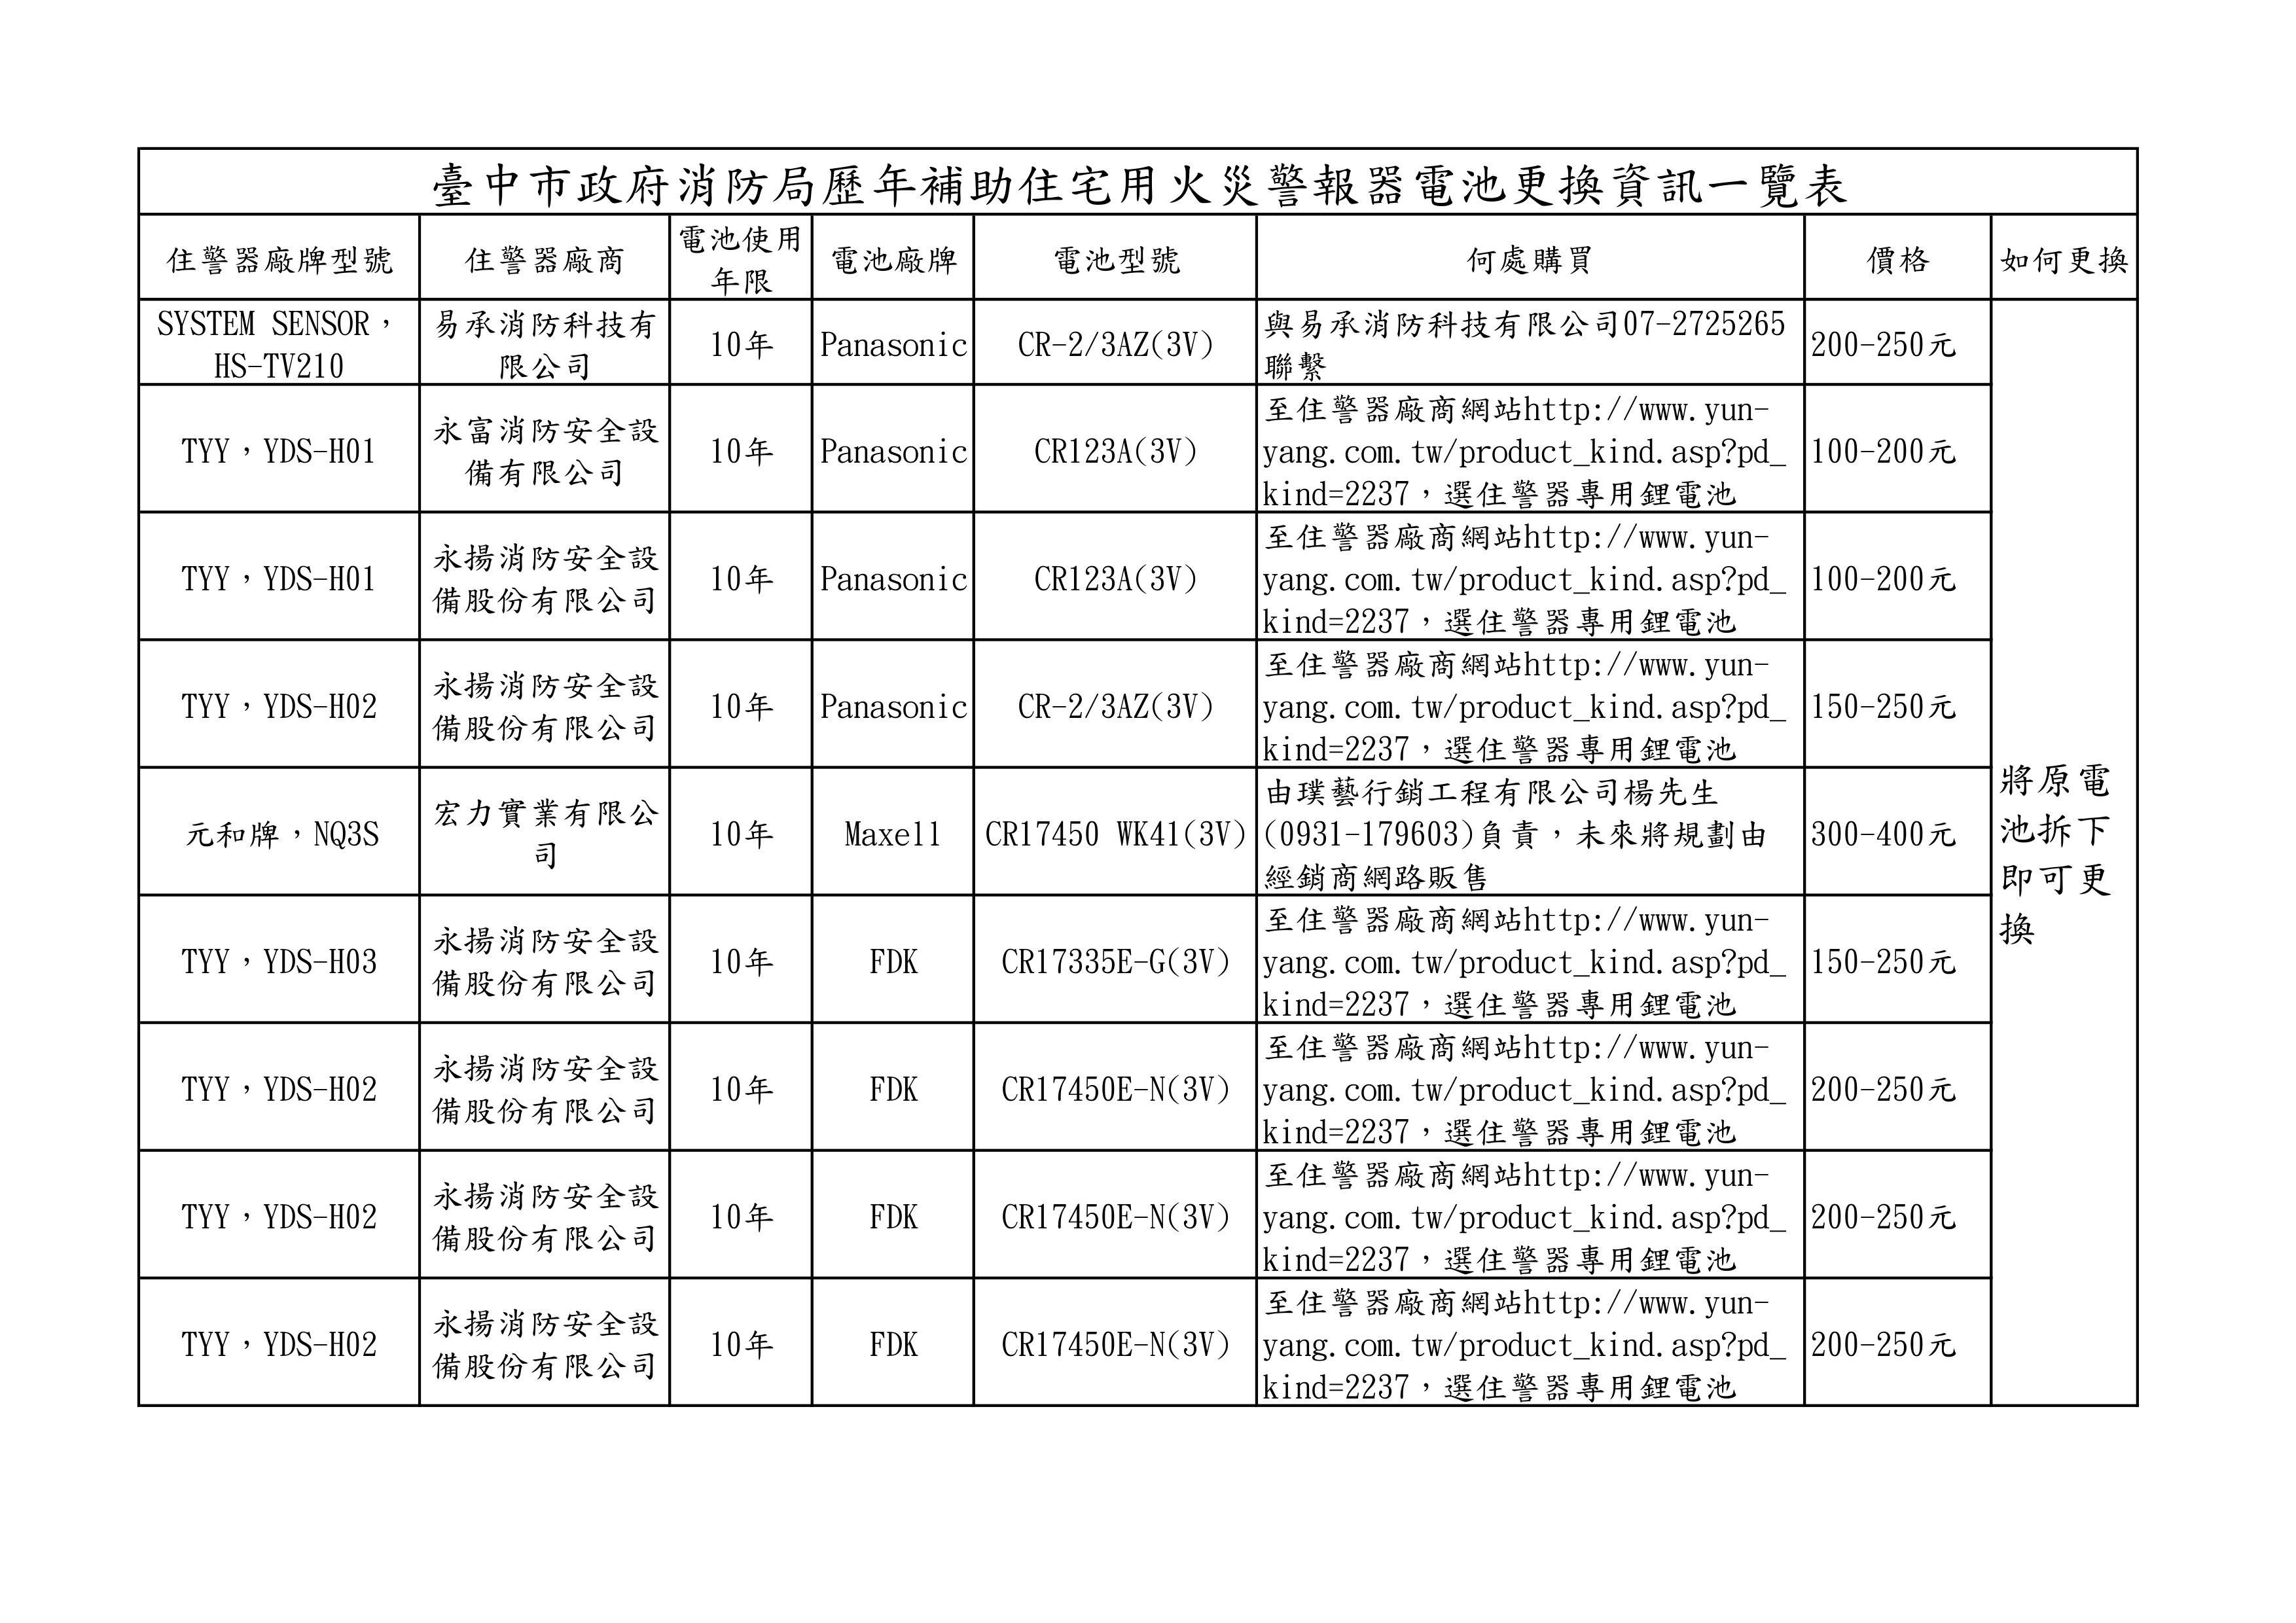 臺中市政府消防局歷年補助住宅用火災警報器電池更換資訊一覽表